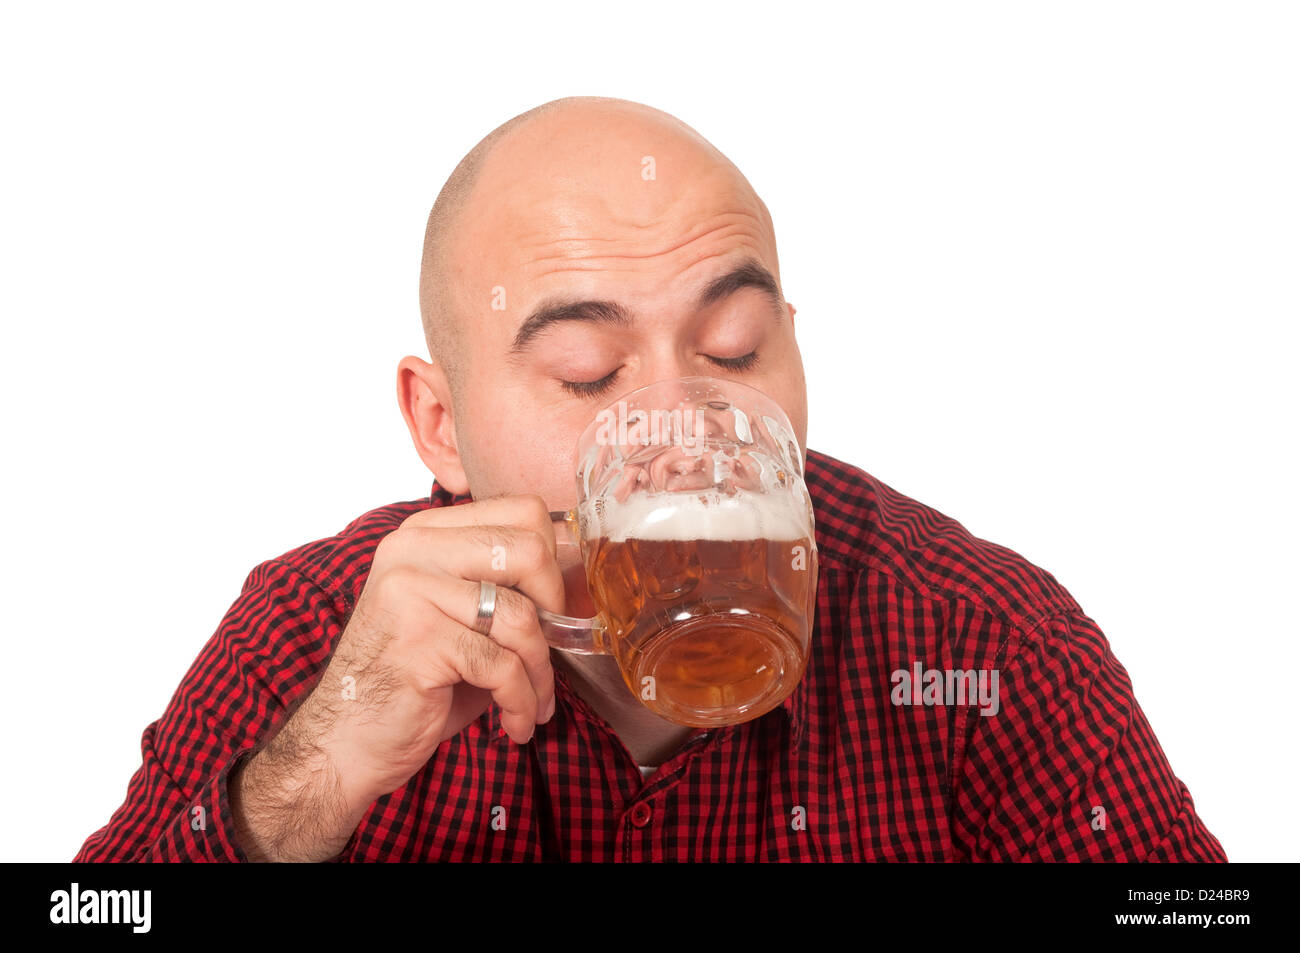 Junge Erwachsene glatzköpfiger Mann trinkt Bier aus einem Krug Stockfoto